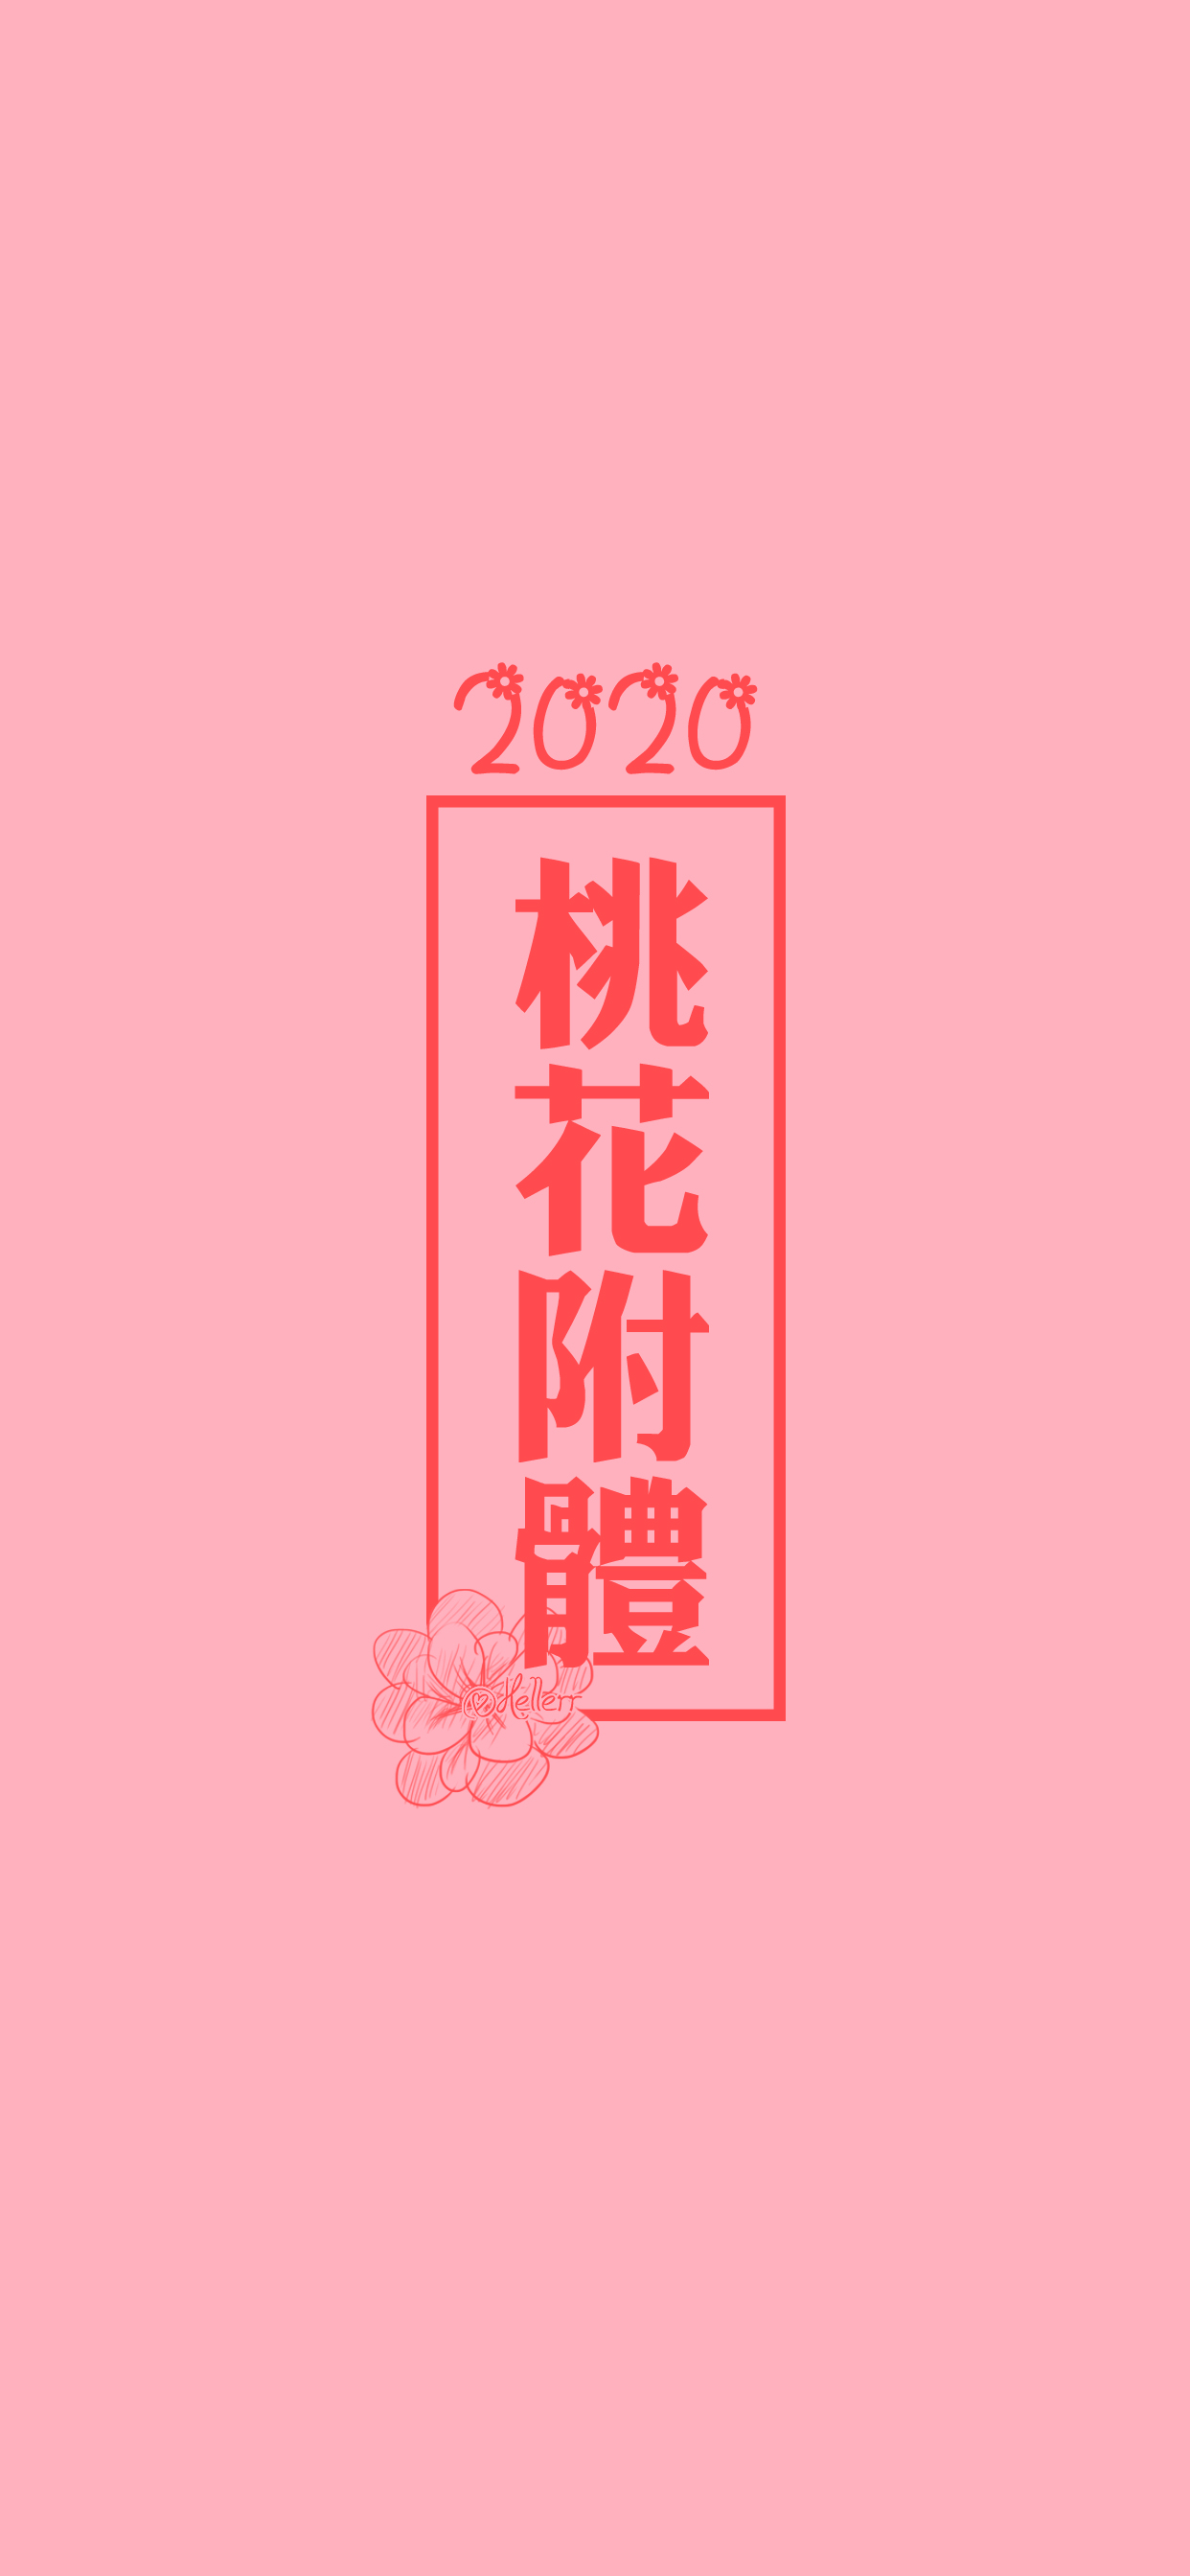 2020桃花附体/2020财神附体/2020升职加薪/2020新年快乐/2020健康平安